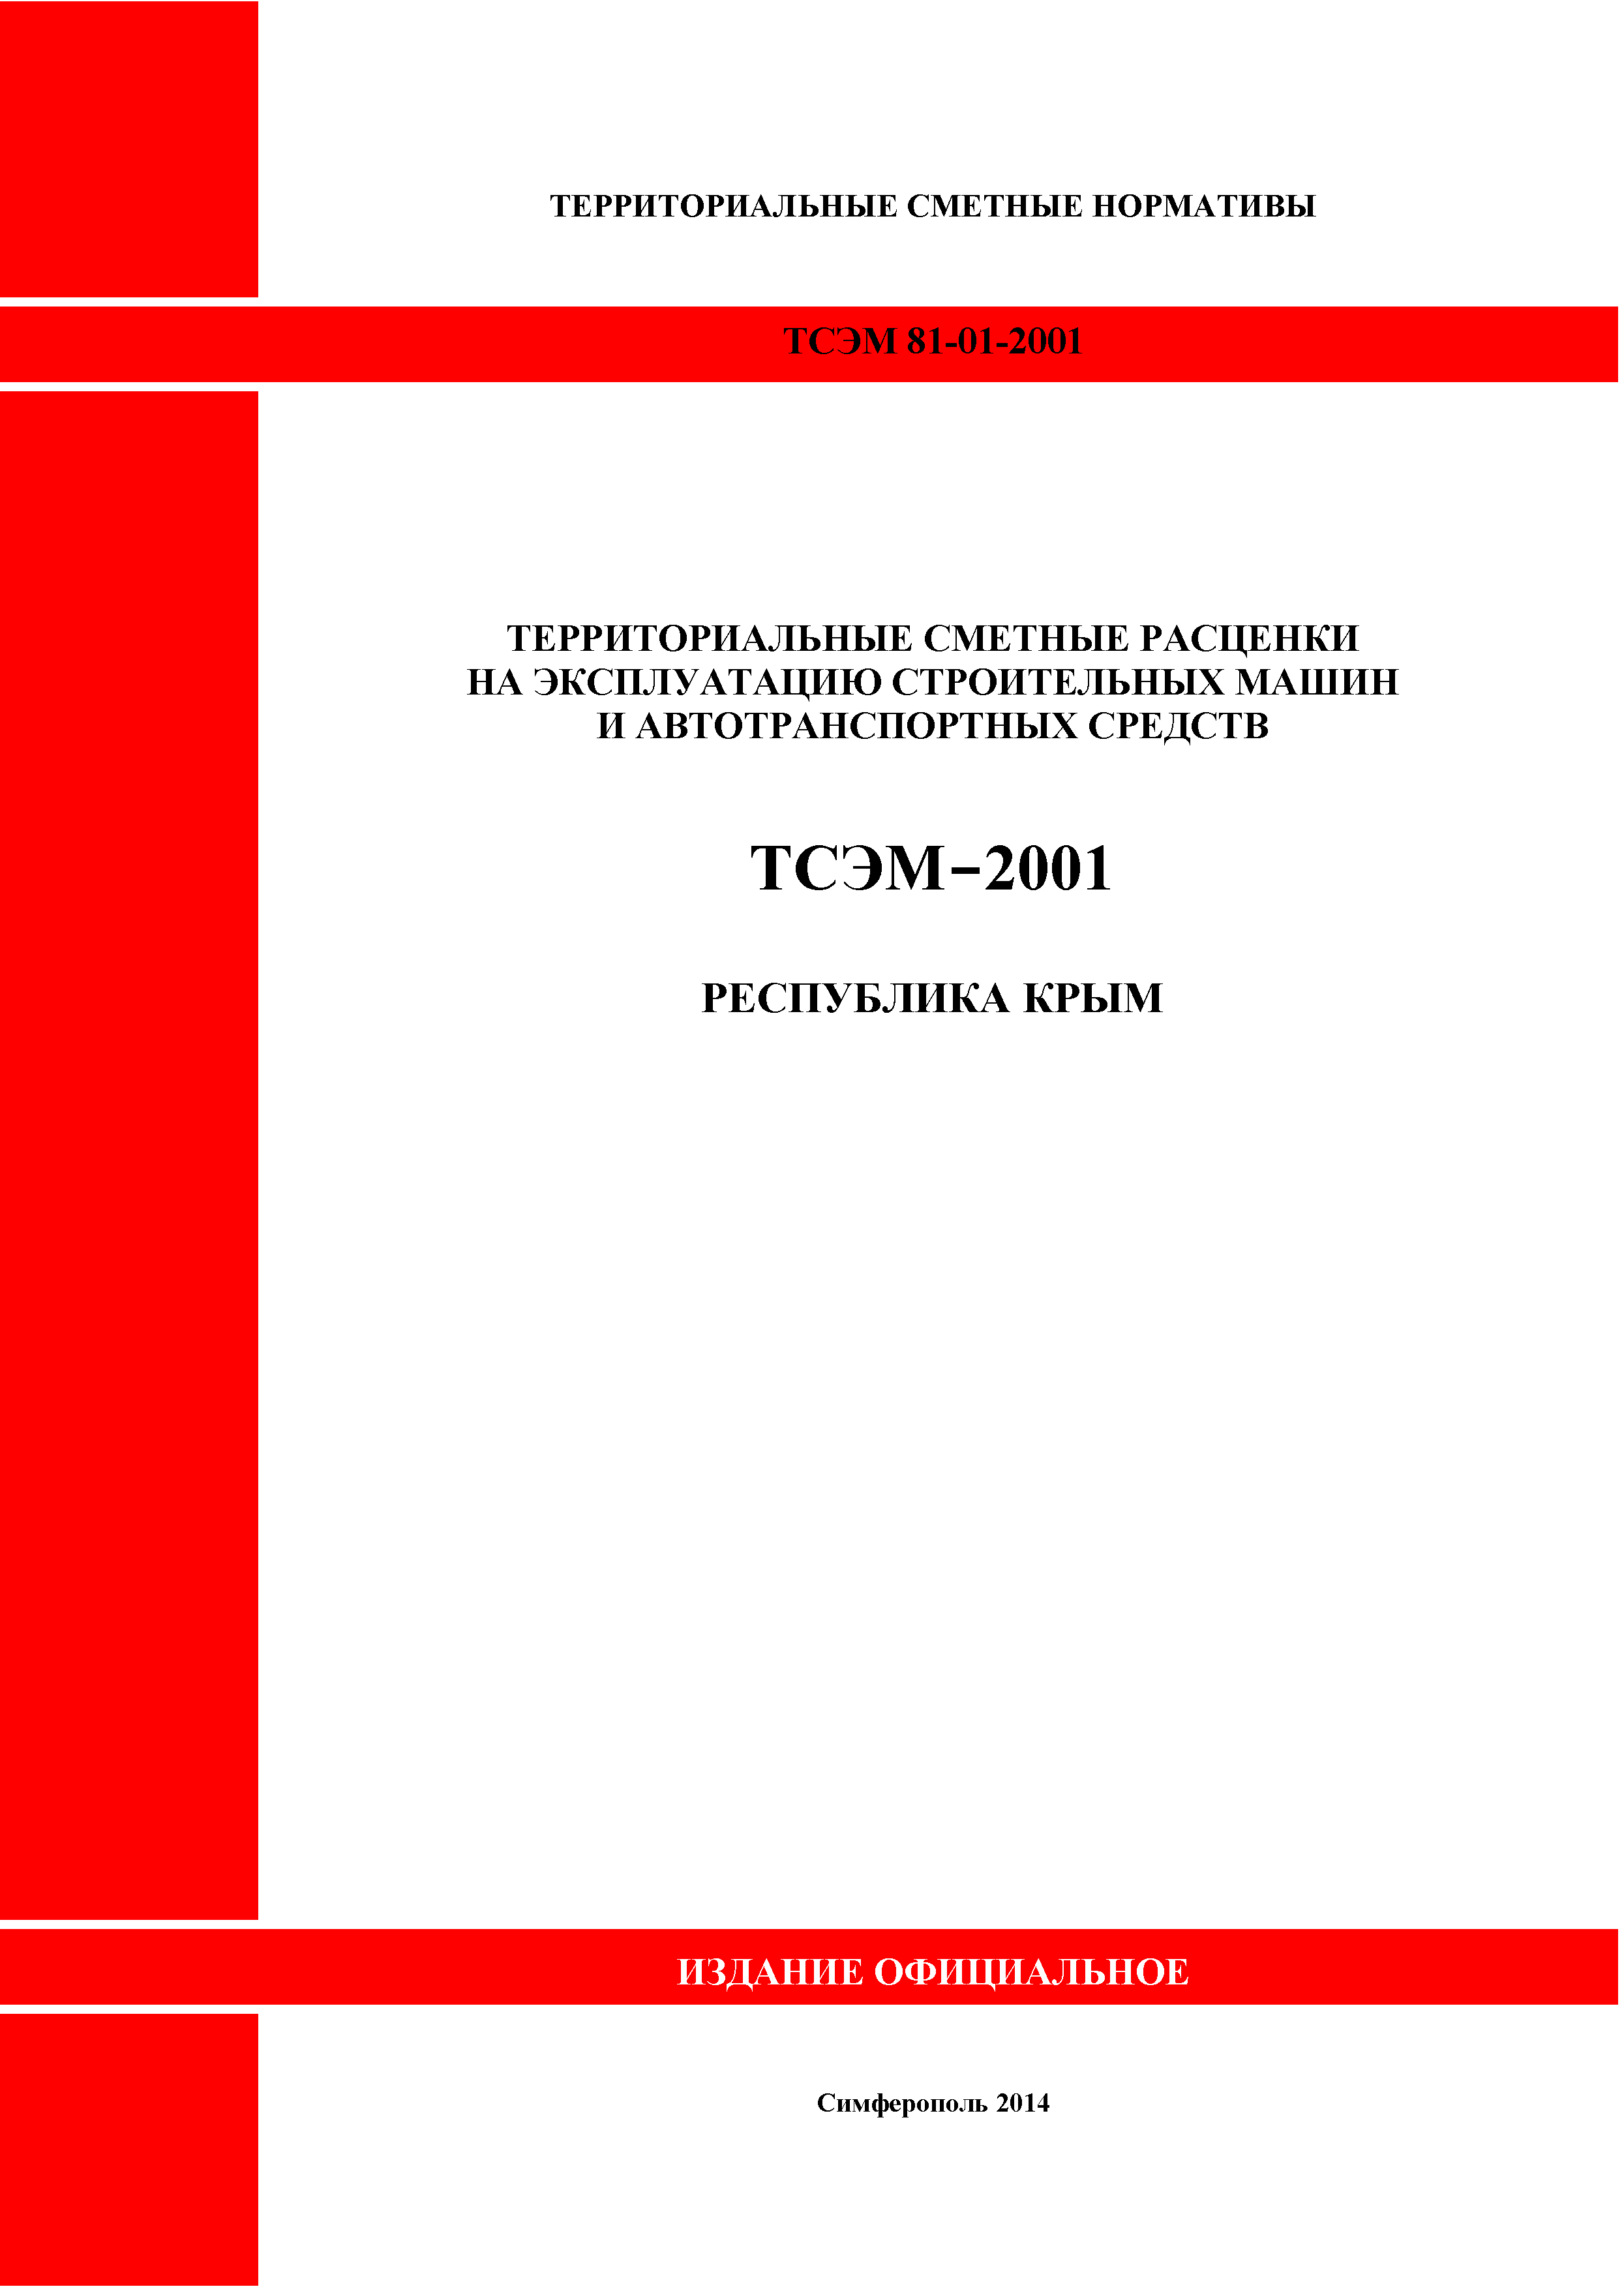 ТСЭМ 2001 Республика Крым